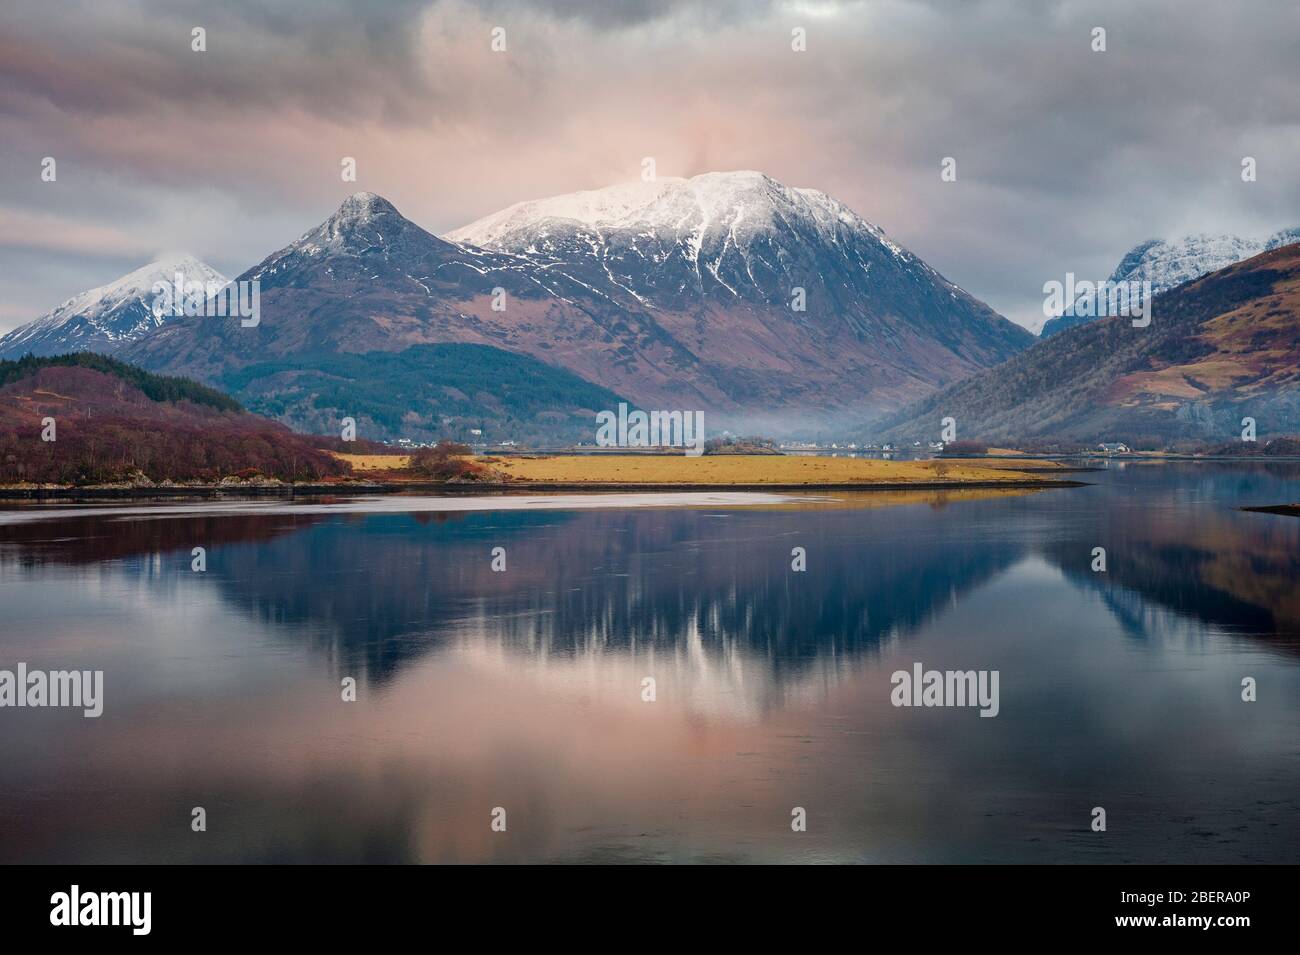 Paesaggio invernale delle Highlands scozzesi - Loch Leven e riflesso delle montagne innevate, tra cui il Pap of Glencoe e Aonach Eagach Foto Stock